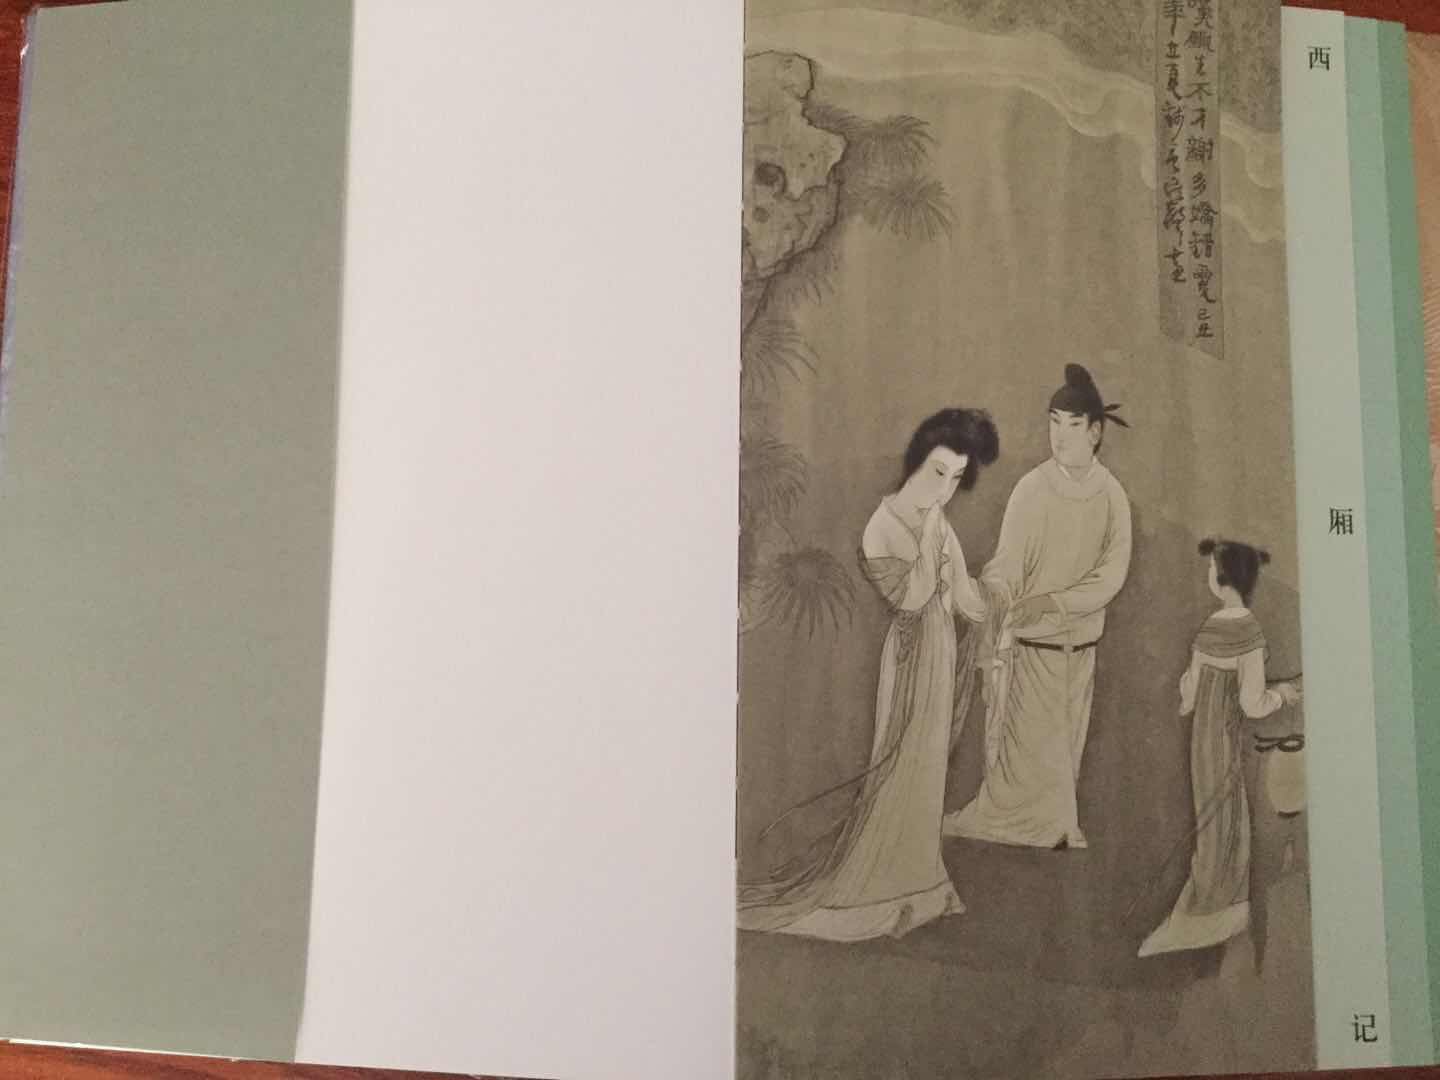 中国古代经典戏曲小说彩绘本。裸脊16开，2018年7月第一版。绘画细腻，制作精美，是一套非常值得收藏的系列丛书。